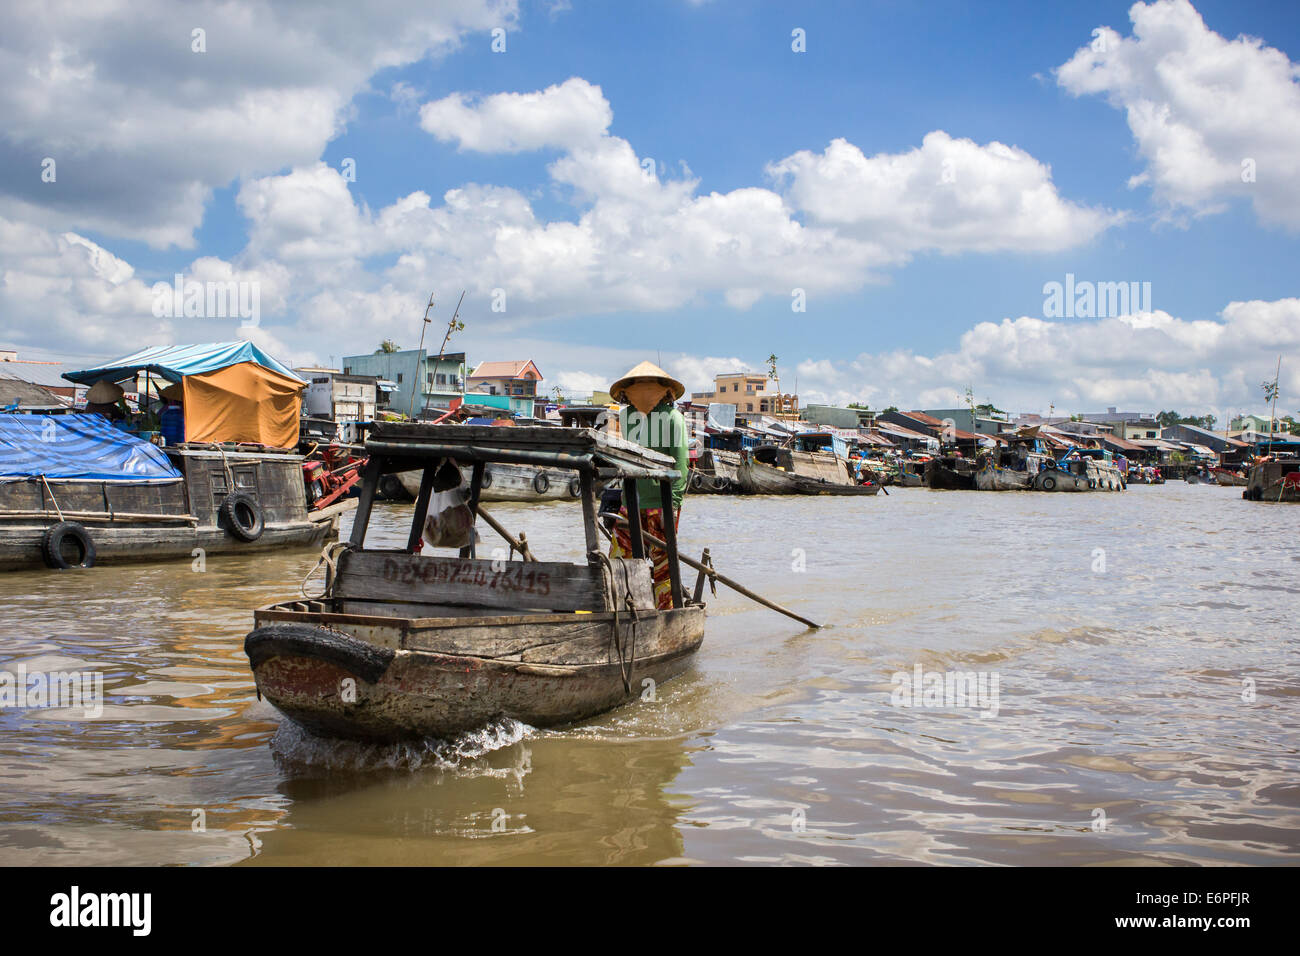 Vue sur la rivière du marché flottant de Cai Rang, près de Can Tho, Delta du Mékong, au Sud Vietnam. tôt le matin sous un ciel nuageux. Banque D'Images